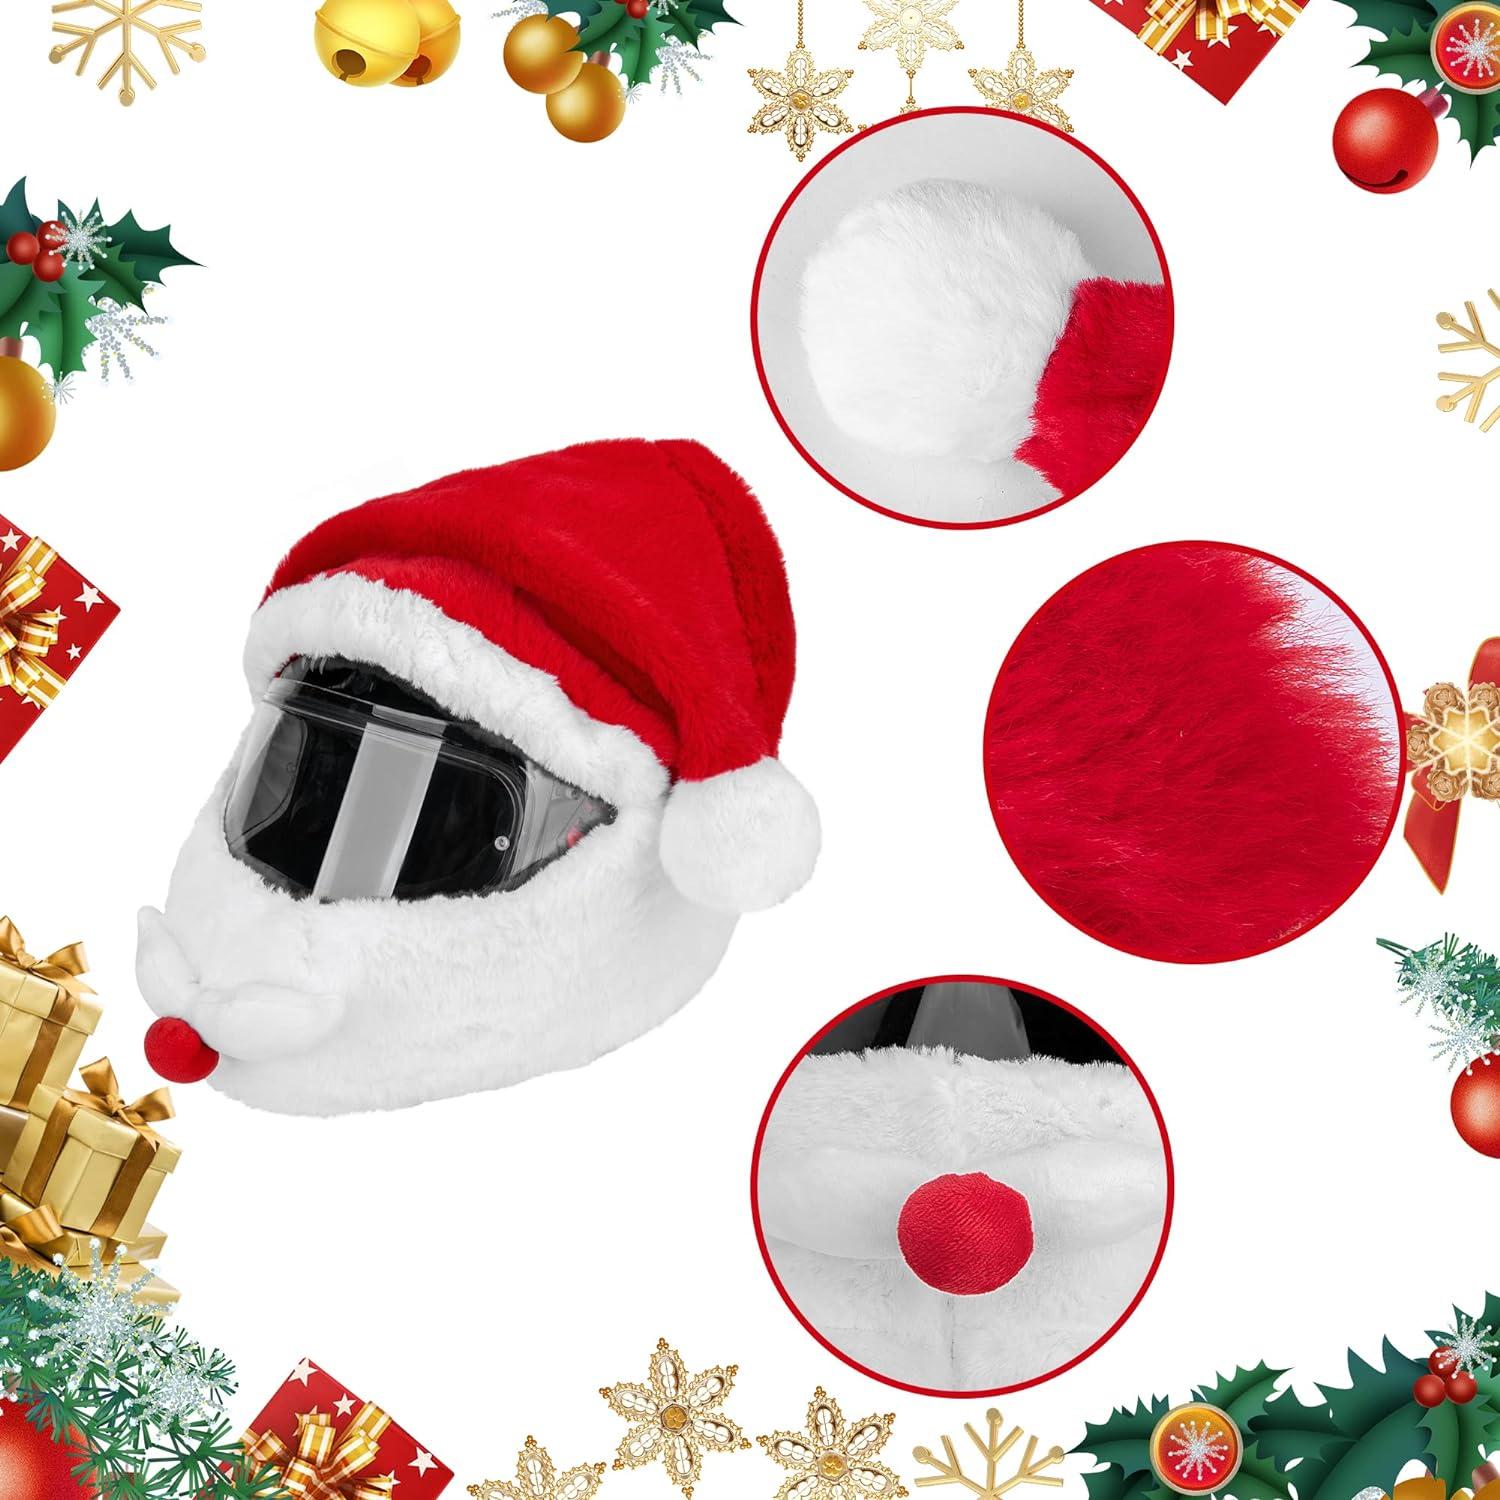 Bìa mũ bảo hiểm xe máy Santa Claus, Phụ kiện trang trí mũ Giáng sinh của ông già Noel